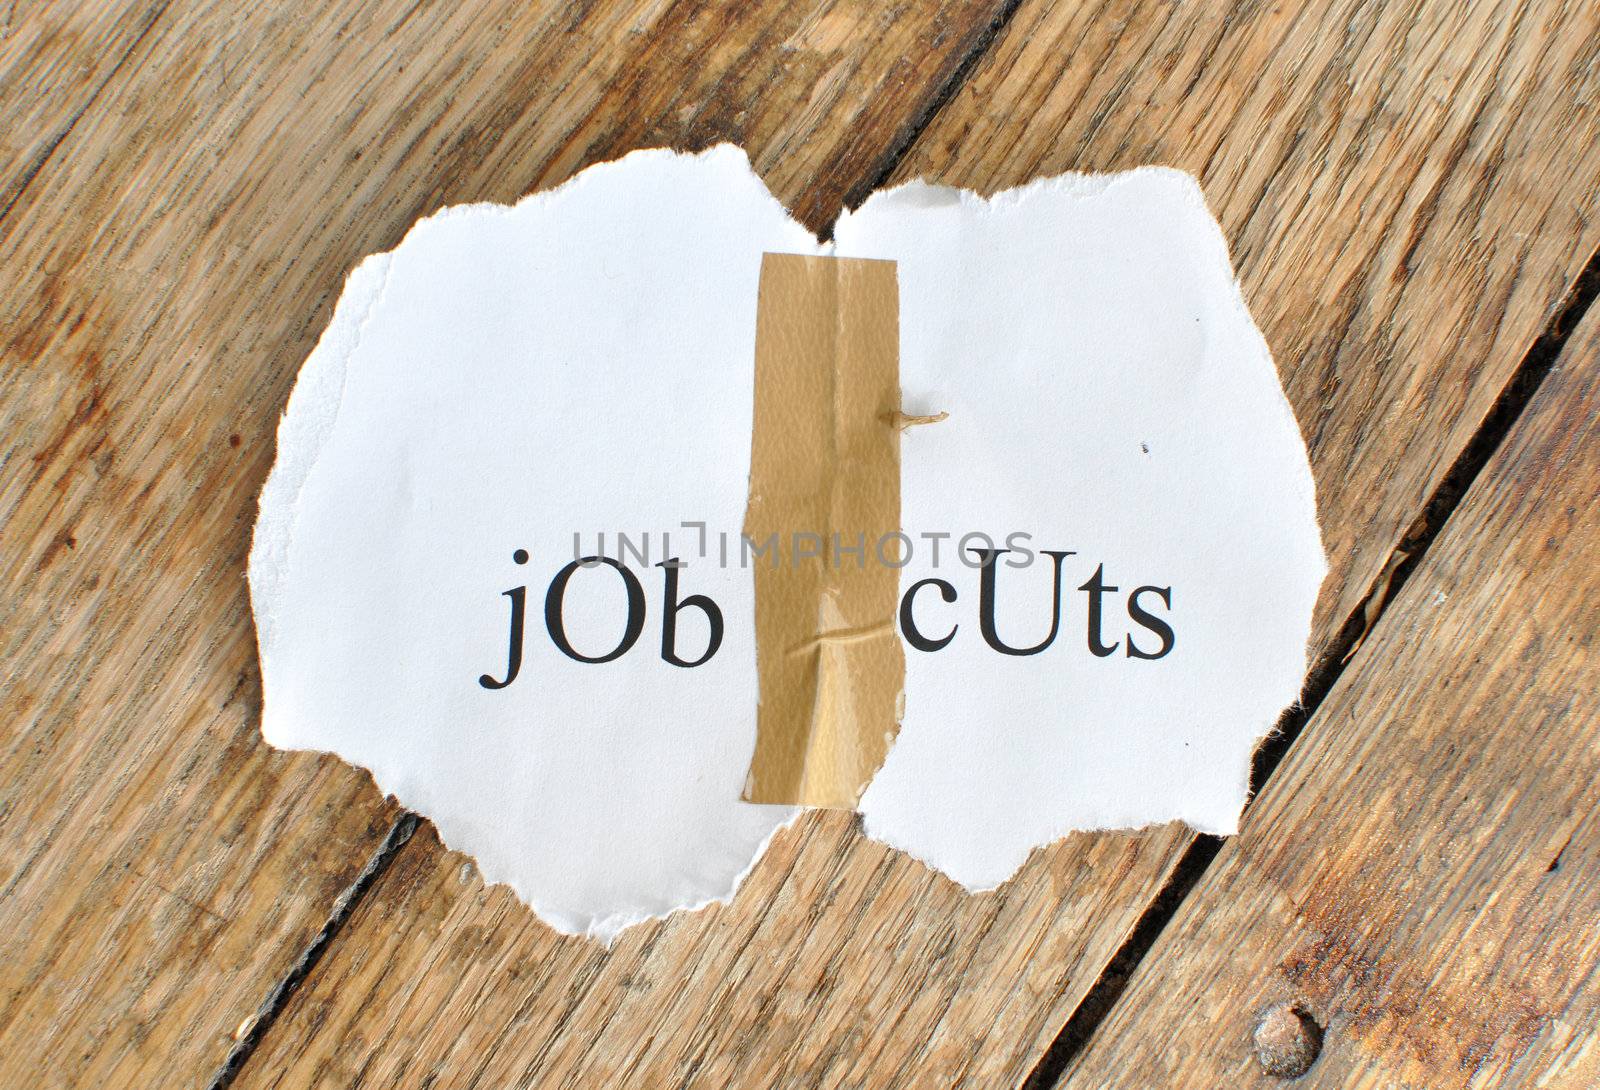 Job cuts by unikpix